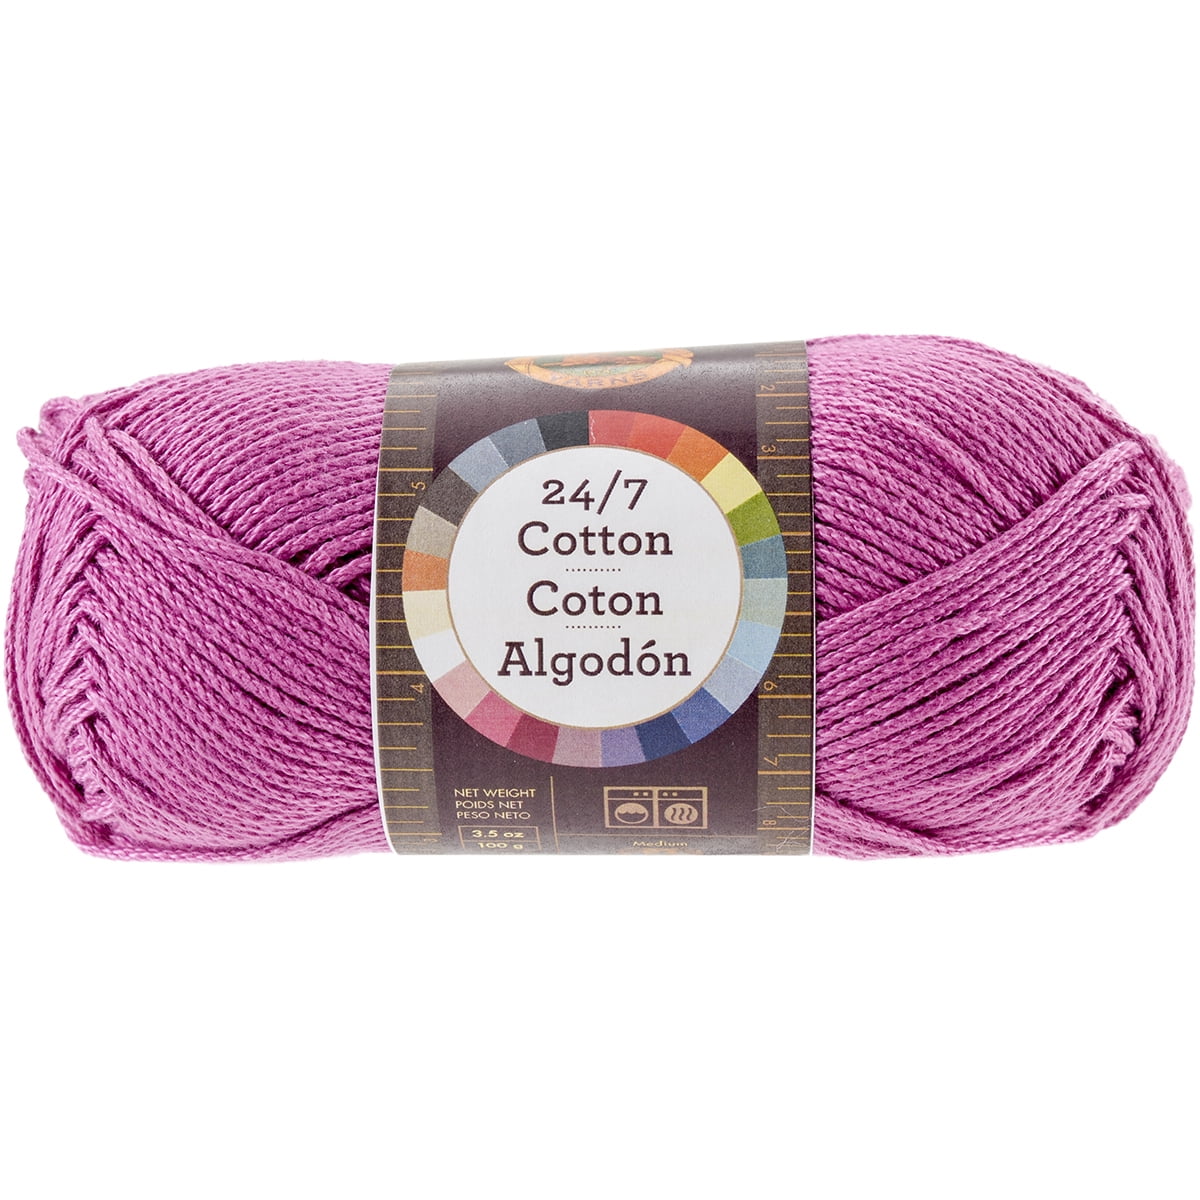 Lion Brand 24/7 Cotton Lemon Cotton Yarn 